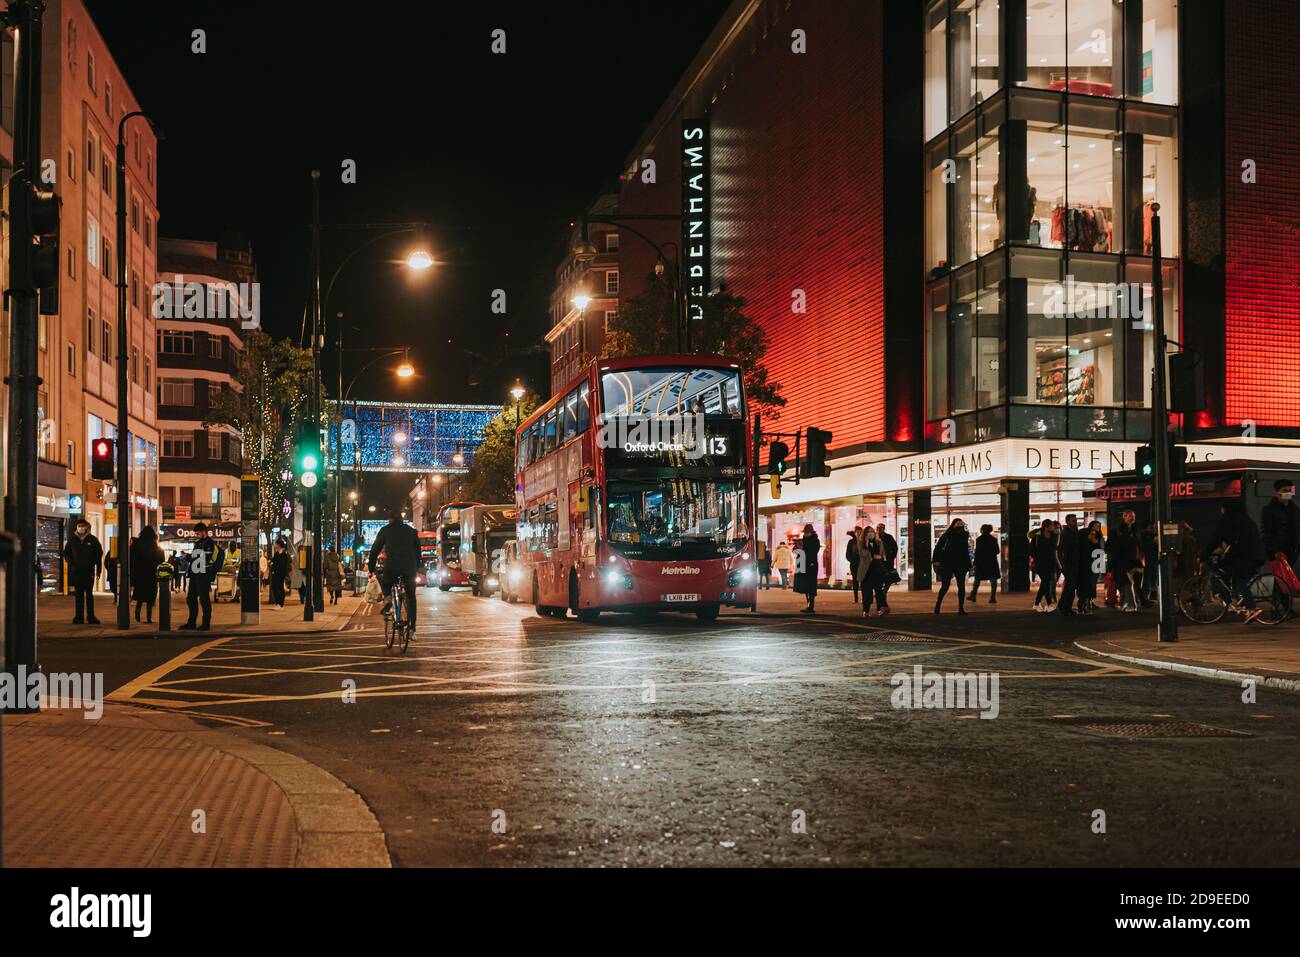 Die Oxford Street hat ihre Weihnachtsbeleuchtung für die Weihnachtsfeierlichkeiten 2020 eingeschaltet. Stockfoto